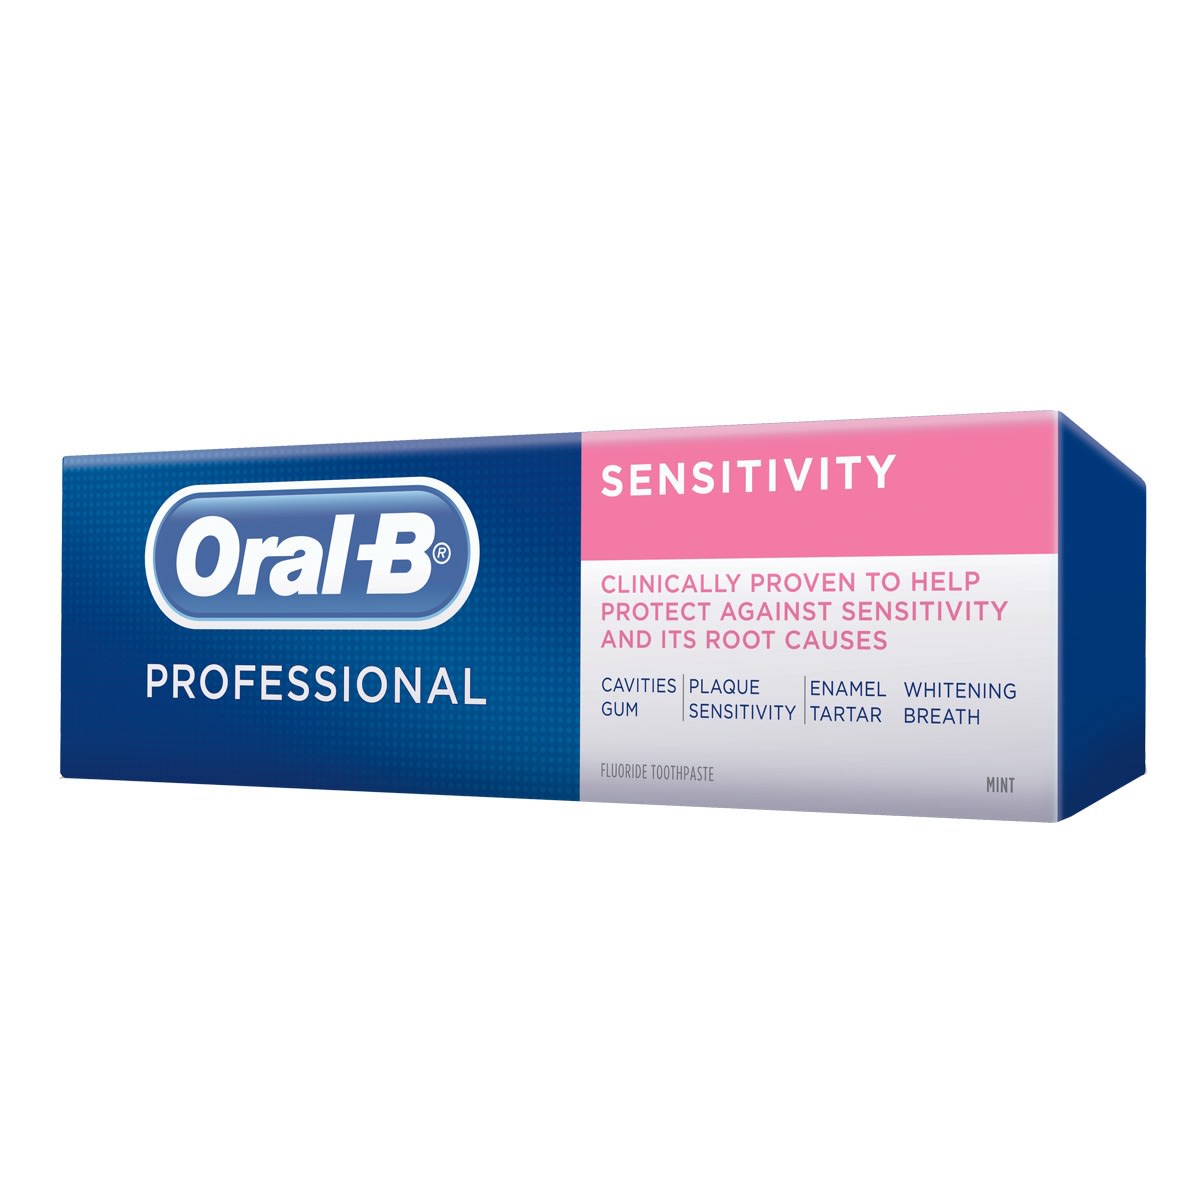 heuvel viel Bederven Oral-B Pro-Expert Professional Sensitive toothpaste | Oral-B